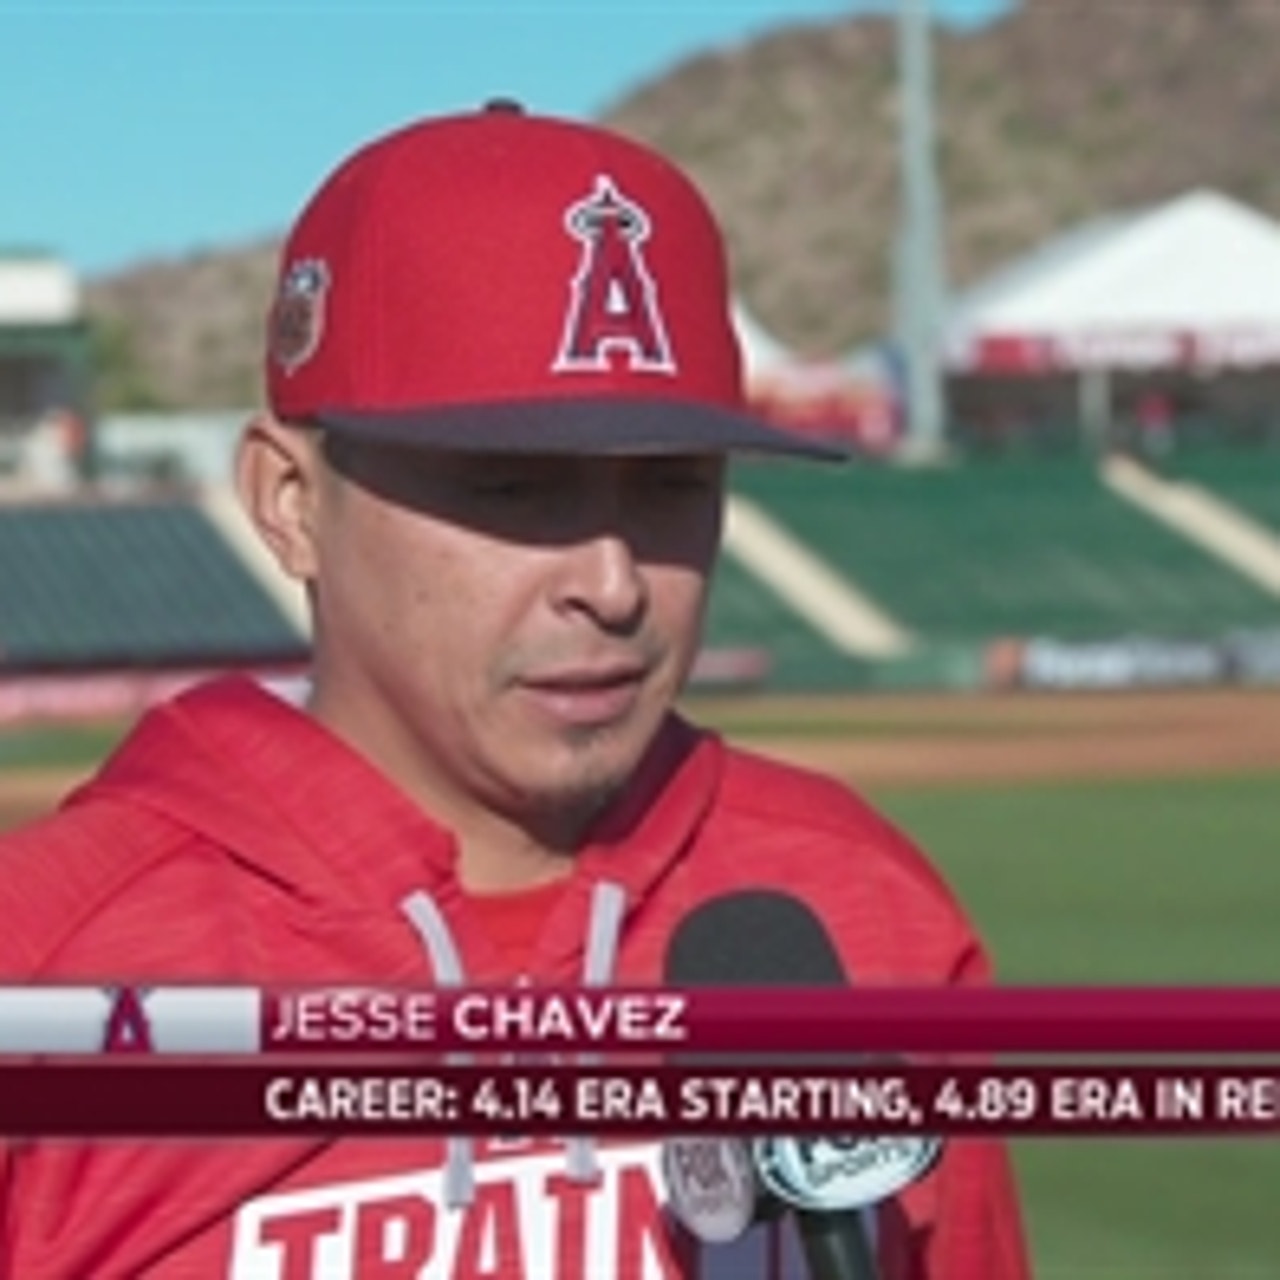 Jesse Chavez starts for Braves on Thursday